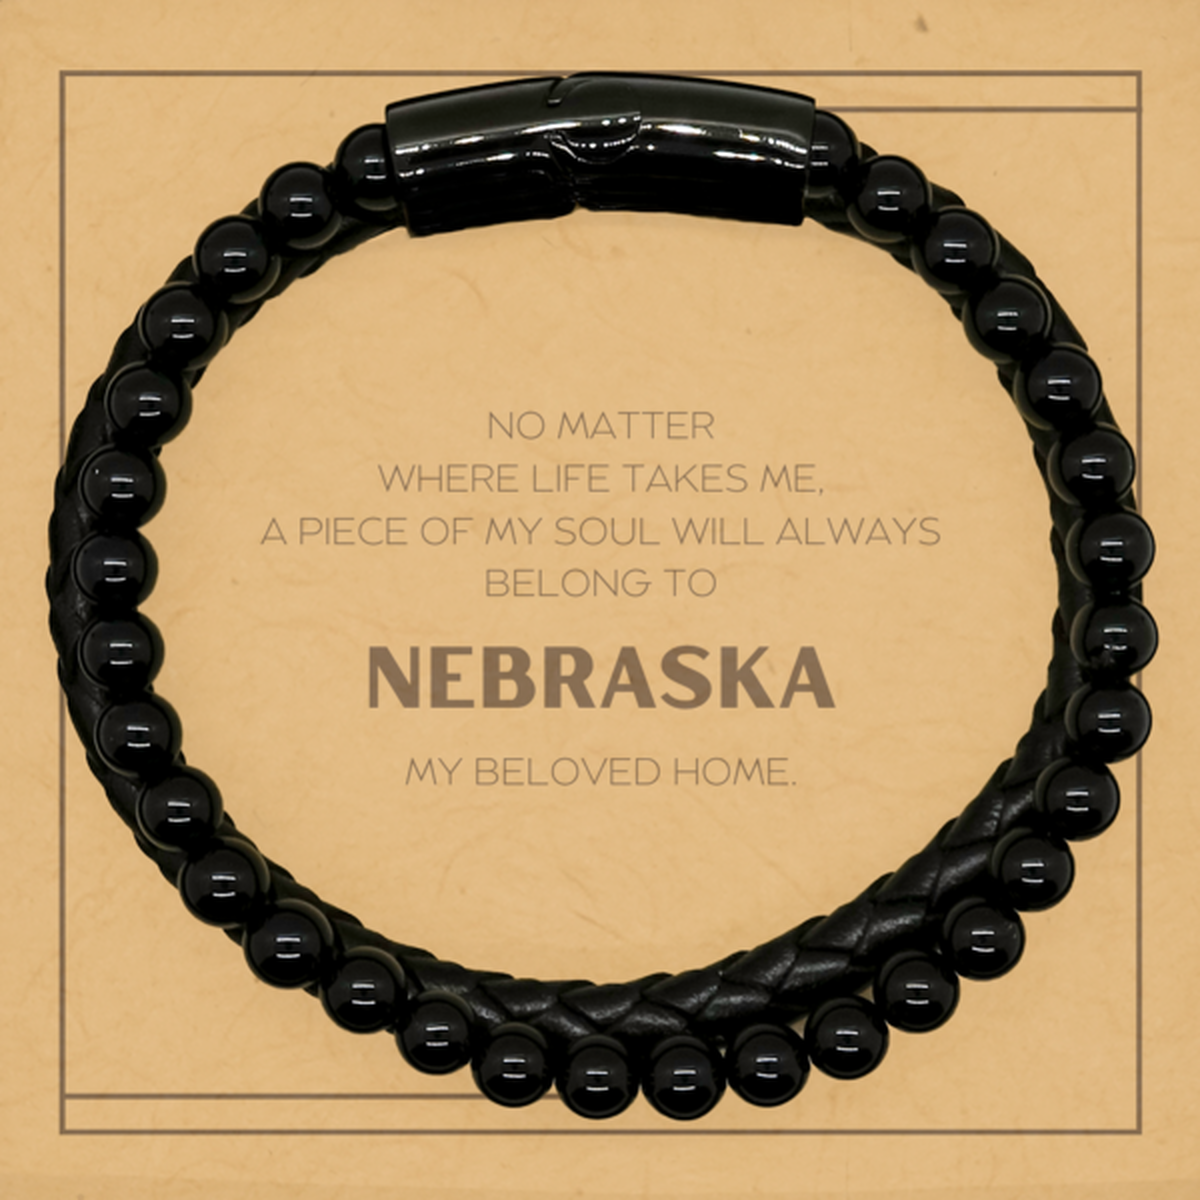 Love Nebraska State Gifts, My soul will always belong to Nebraska, Proud Stone Leather Bracelets, Birthday Unique Gifts For Nebraska Men, Women, Friends